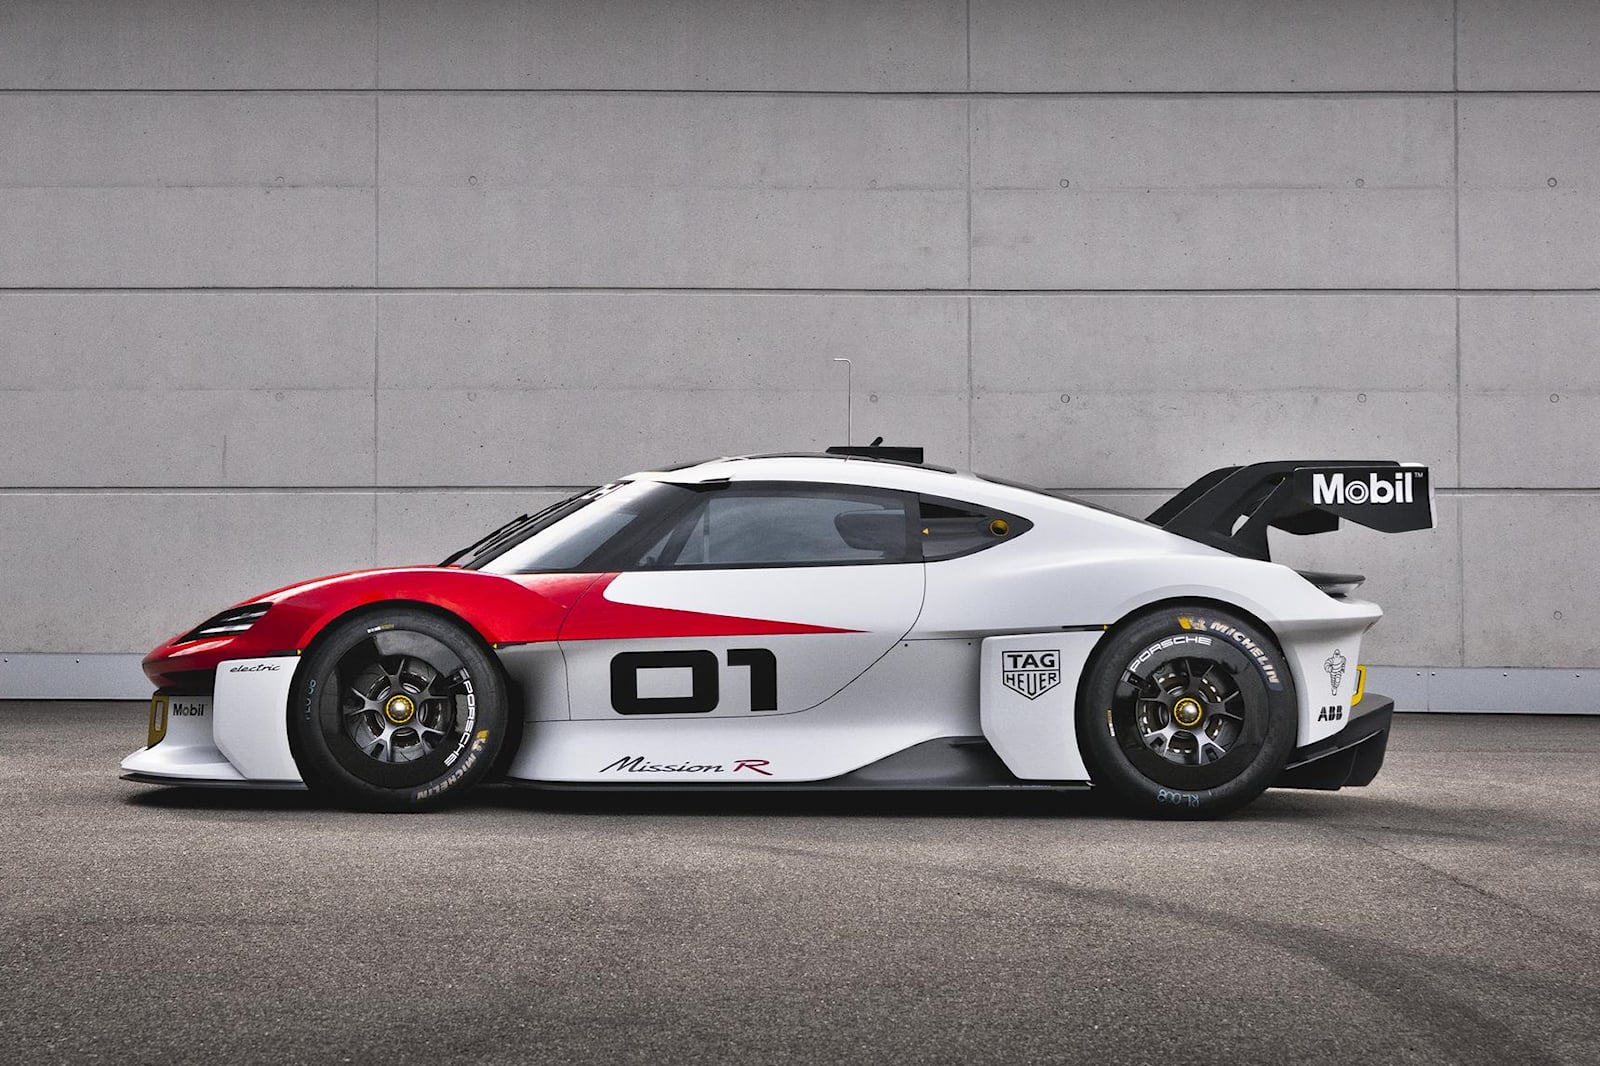 Porsche объявила о намерении поднять цены на свои электромобили в 2023 году, поскольку планирует сохранить высокую прибыль, сообщает Autocar.